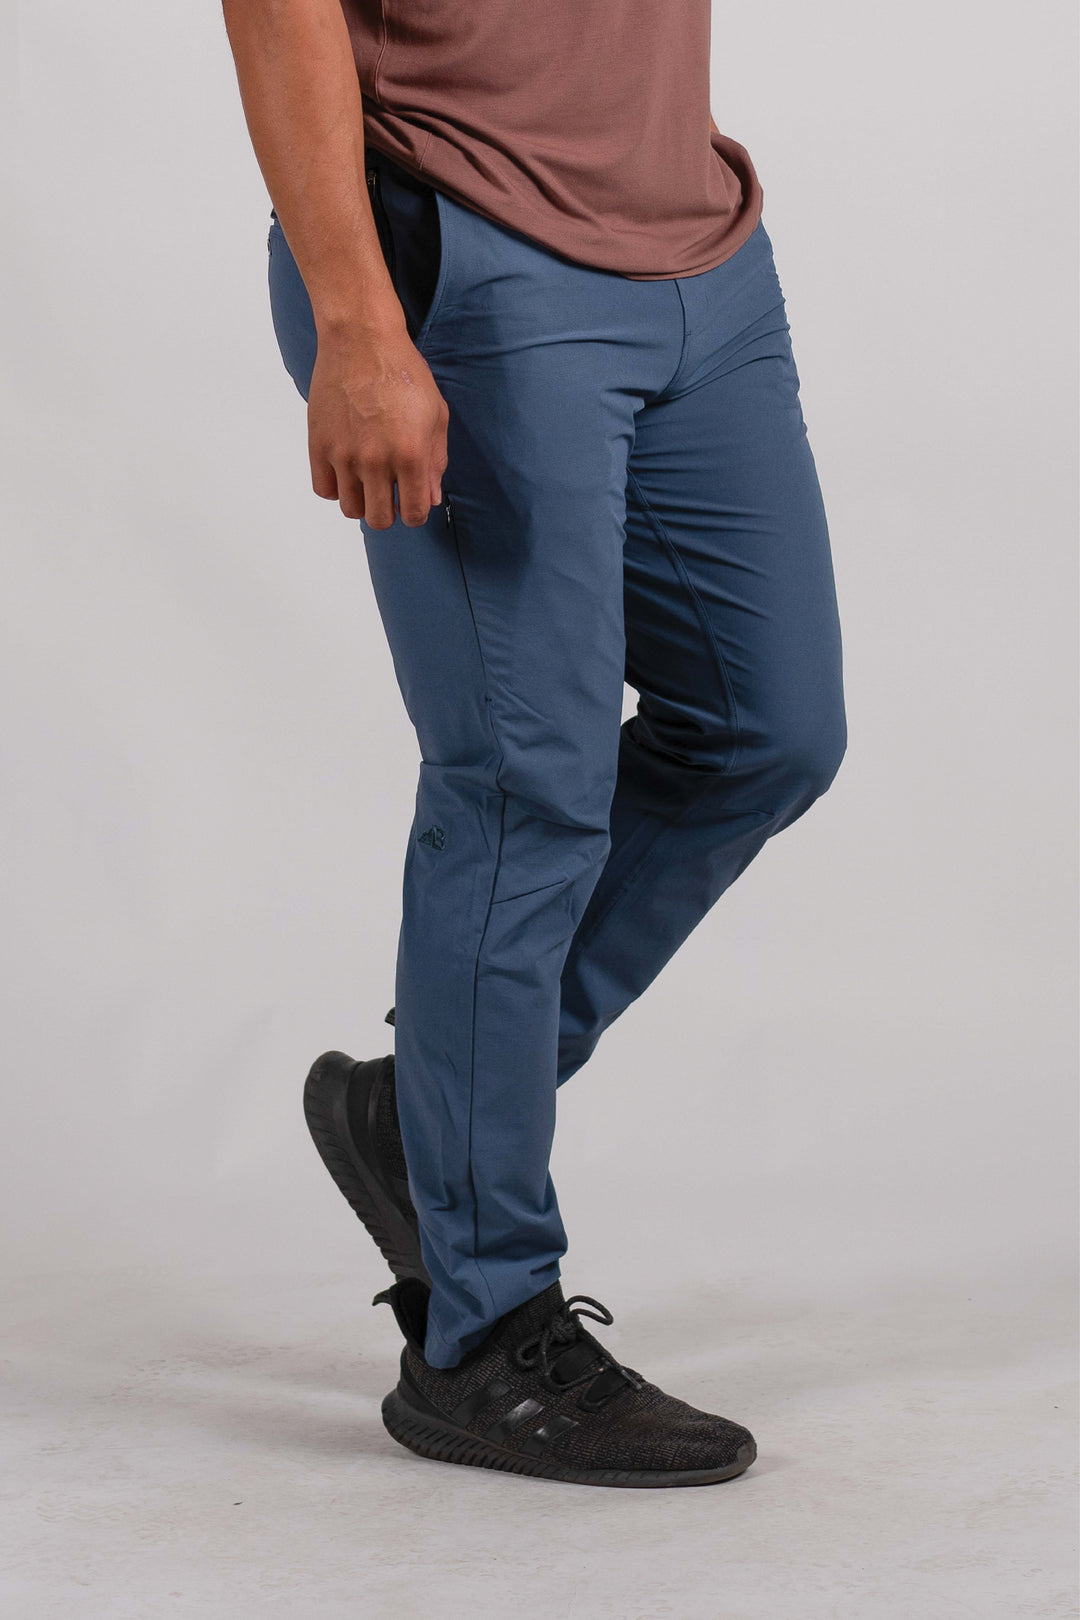 2-Pack Bundle: Men's Rocky Mountain Pants (Size XXL)